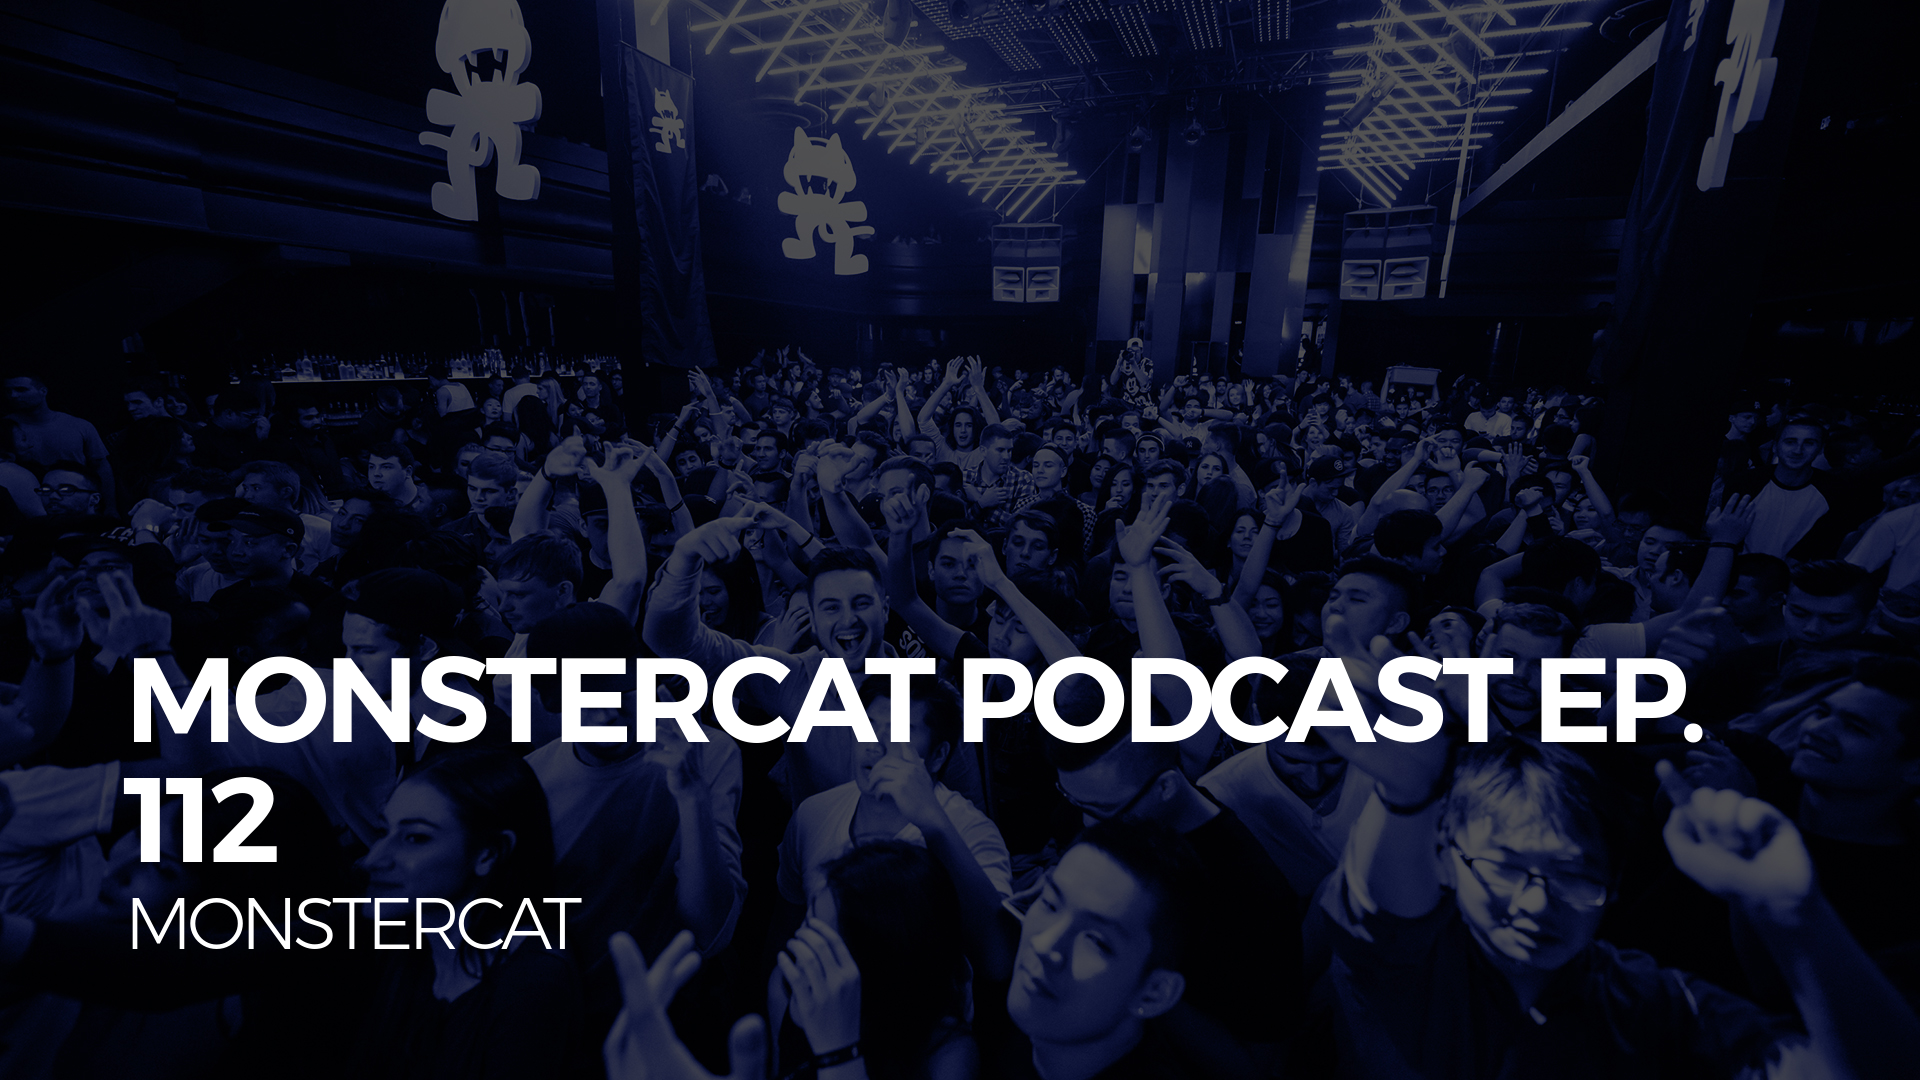 Monstercat Podcast Ep. 112